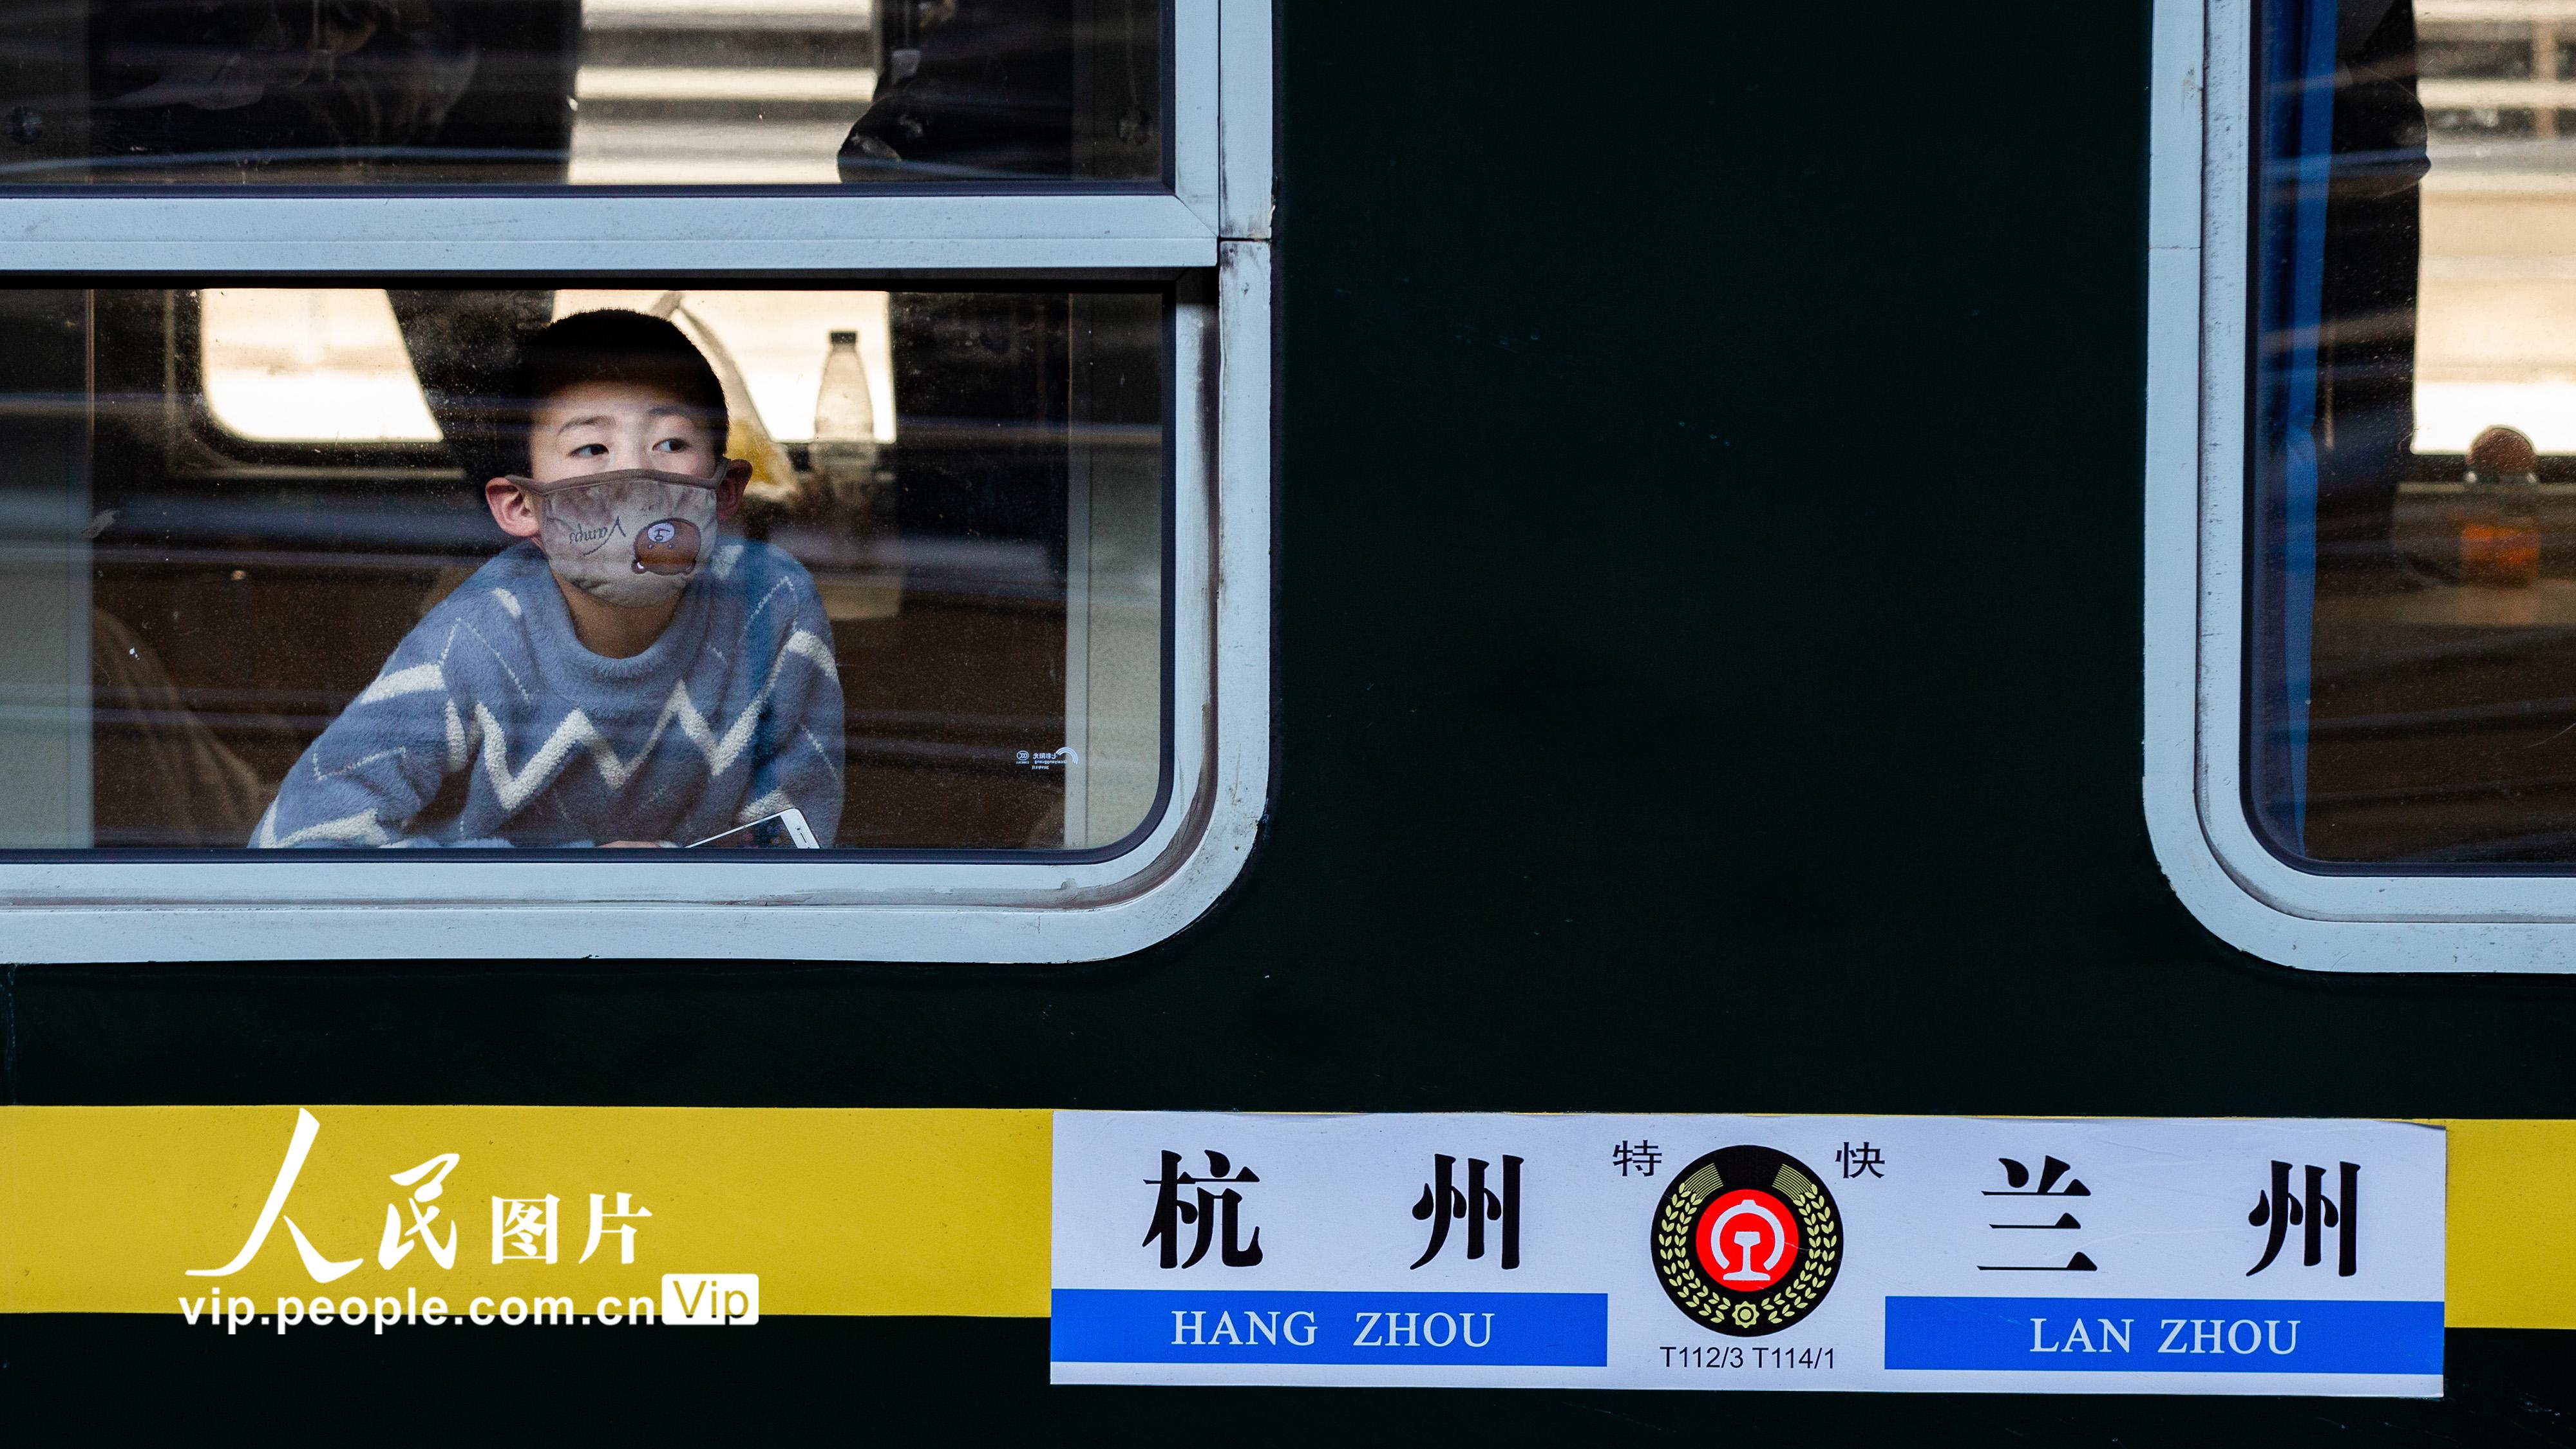 2月18日，在南京火車站，一名小朋友透過列車車窗向外張望。